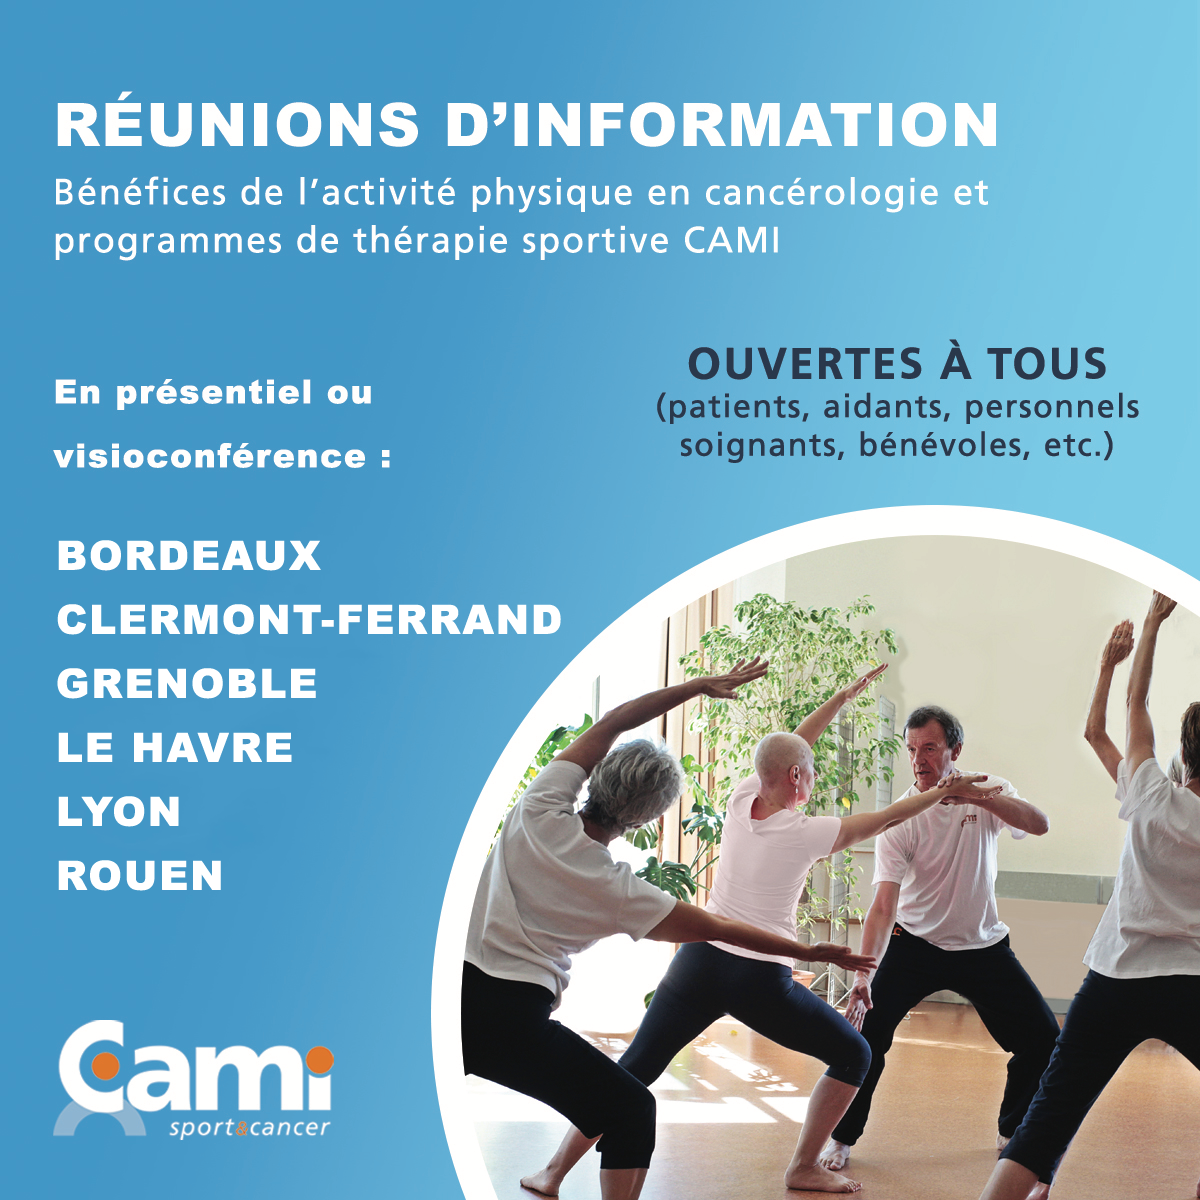 Réunions d'information : bénéfices de l'activité physique en cancérologie et programmes de thérapie sportive CAMI - Juin 2021